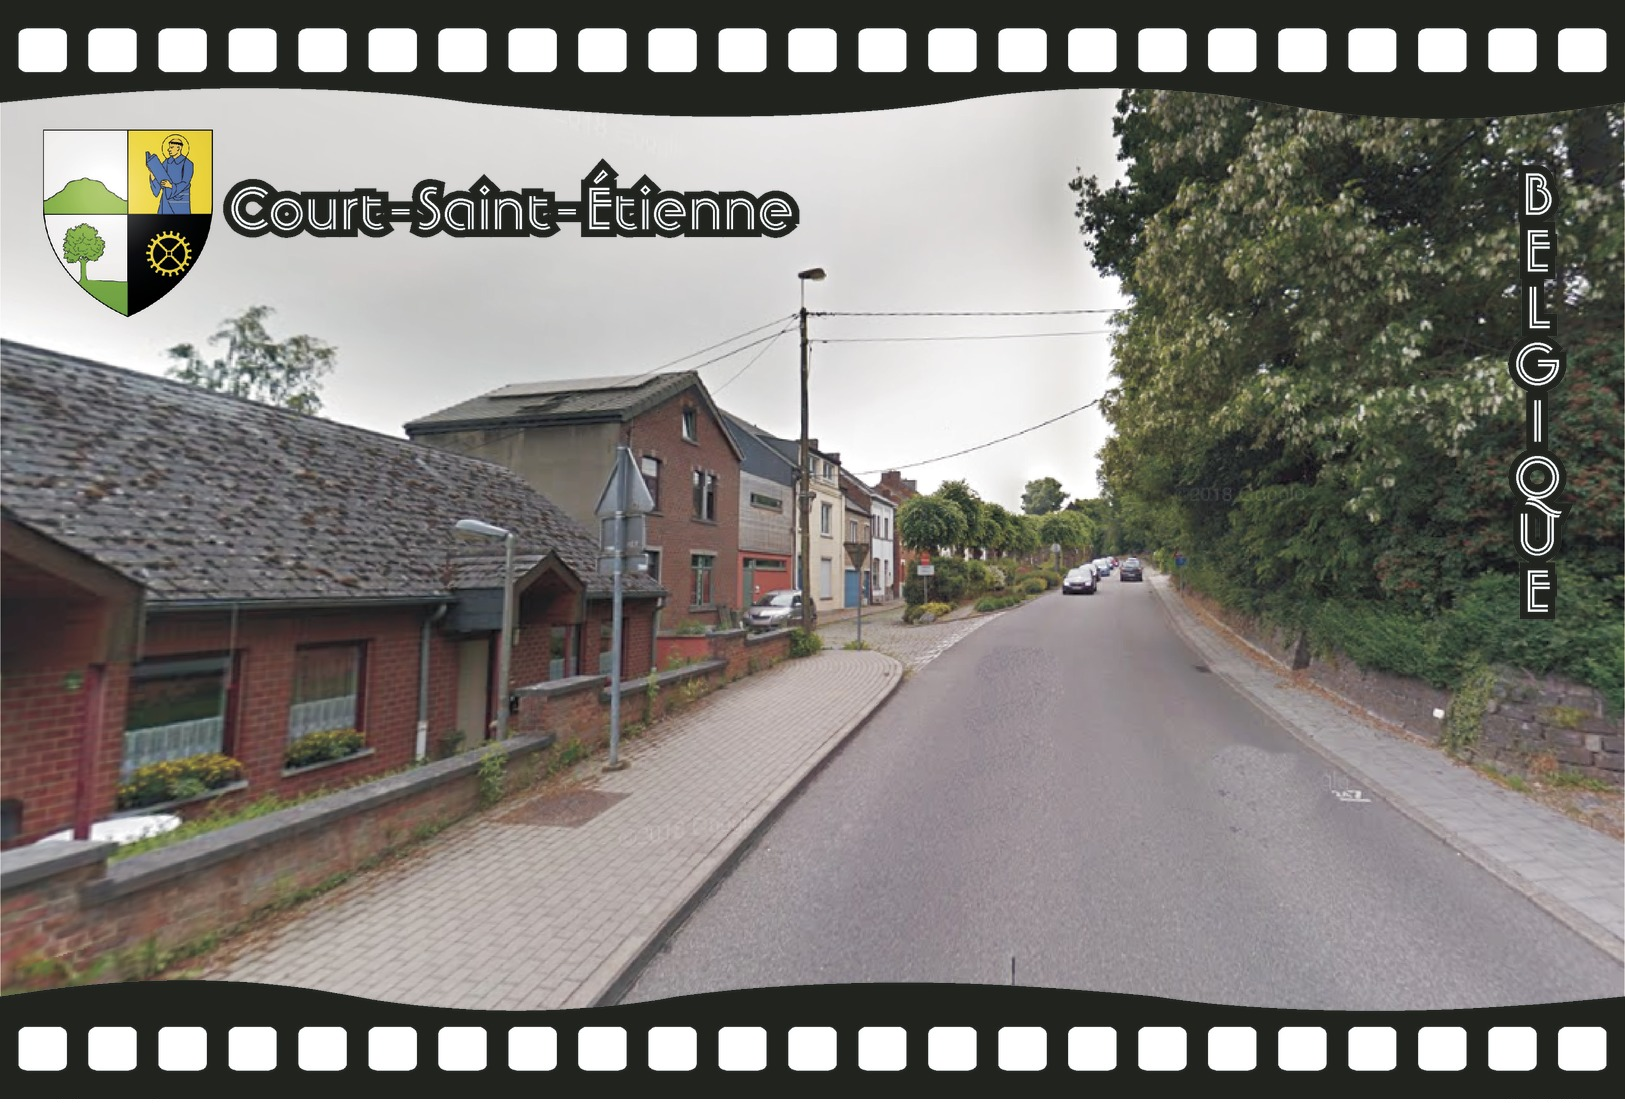 Postcard, REPRODUCTION, Municipalities Of Belgium, Streets Of Court-Saint-Étienne 18 - Cartes Géographiques